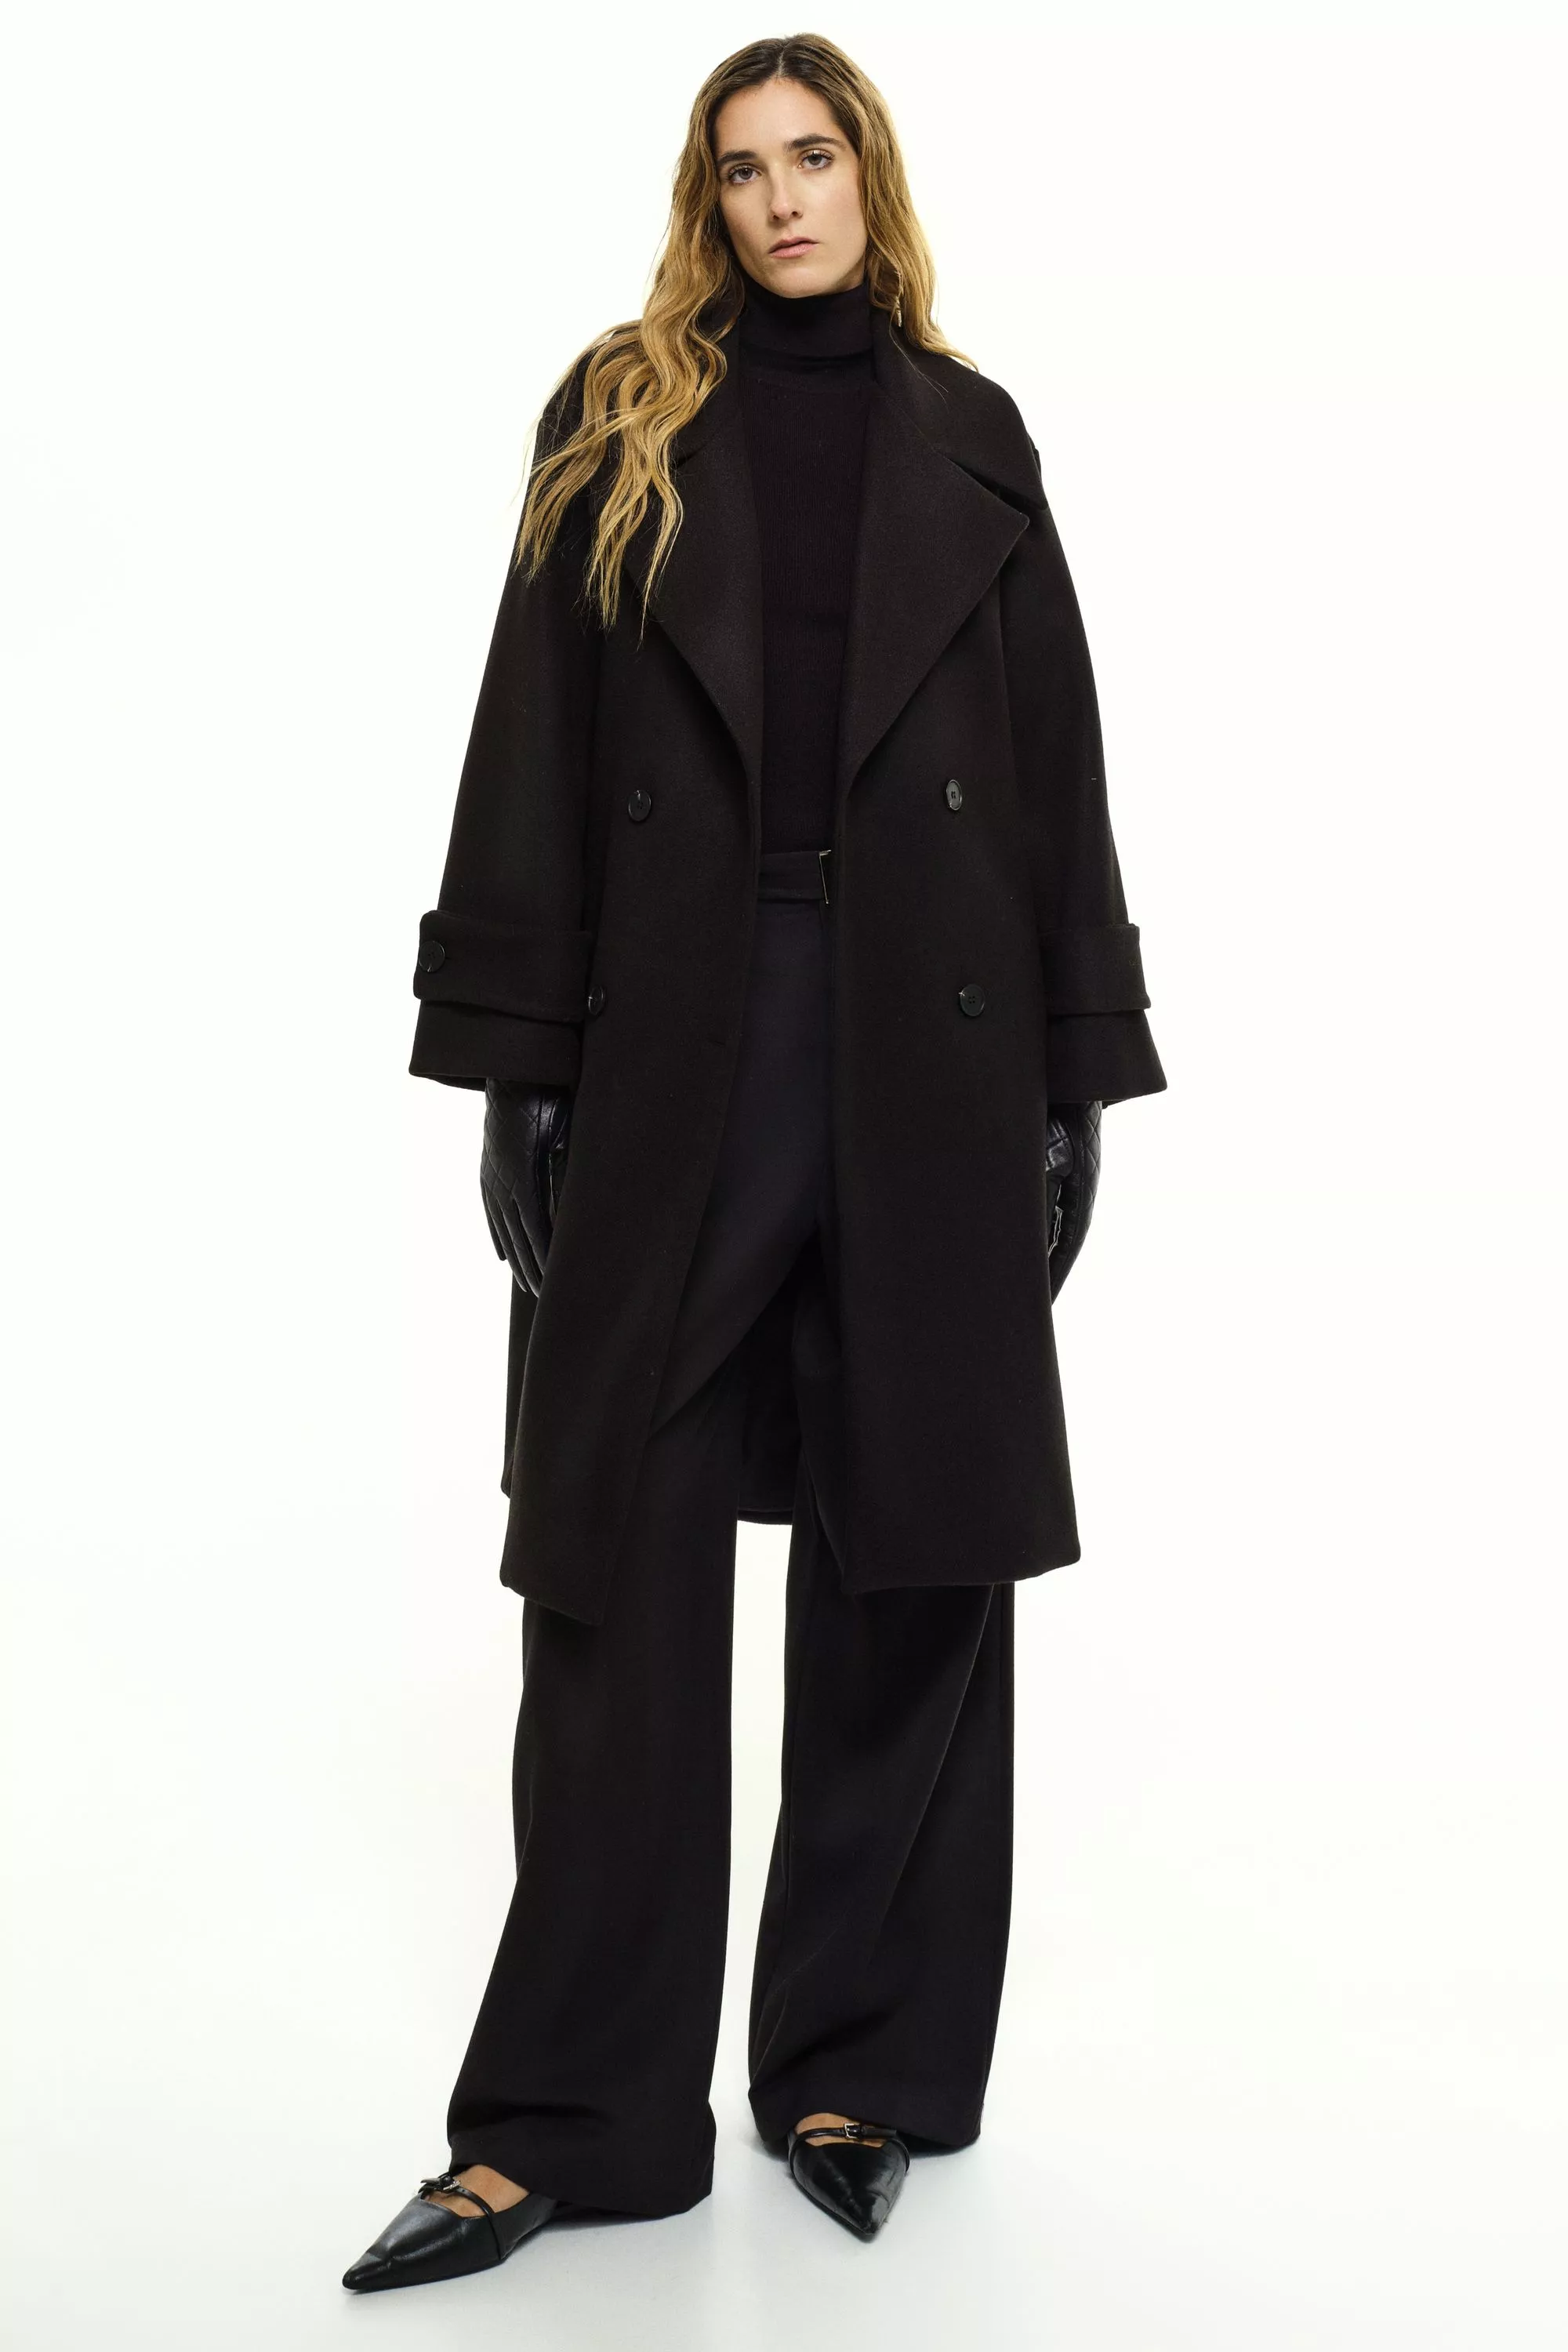 Damen Zweireihiger Mantel in Schwarz von Ricano, Frontansicht am Model (2)